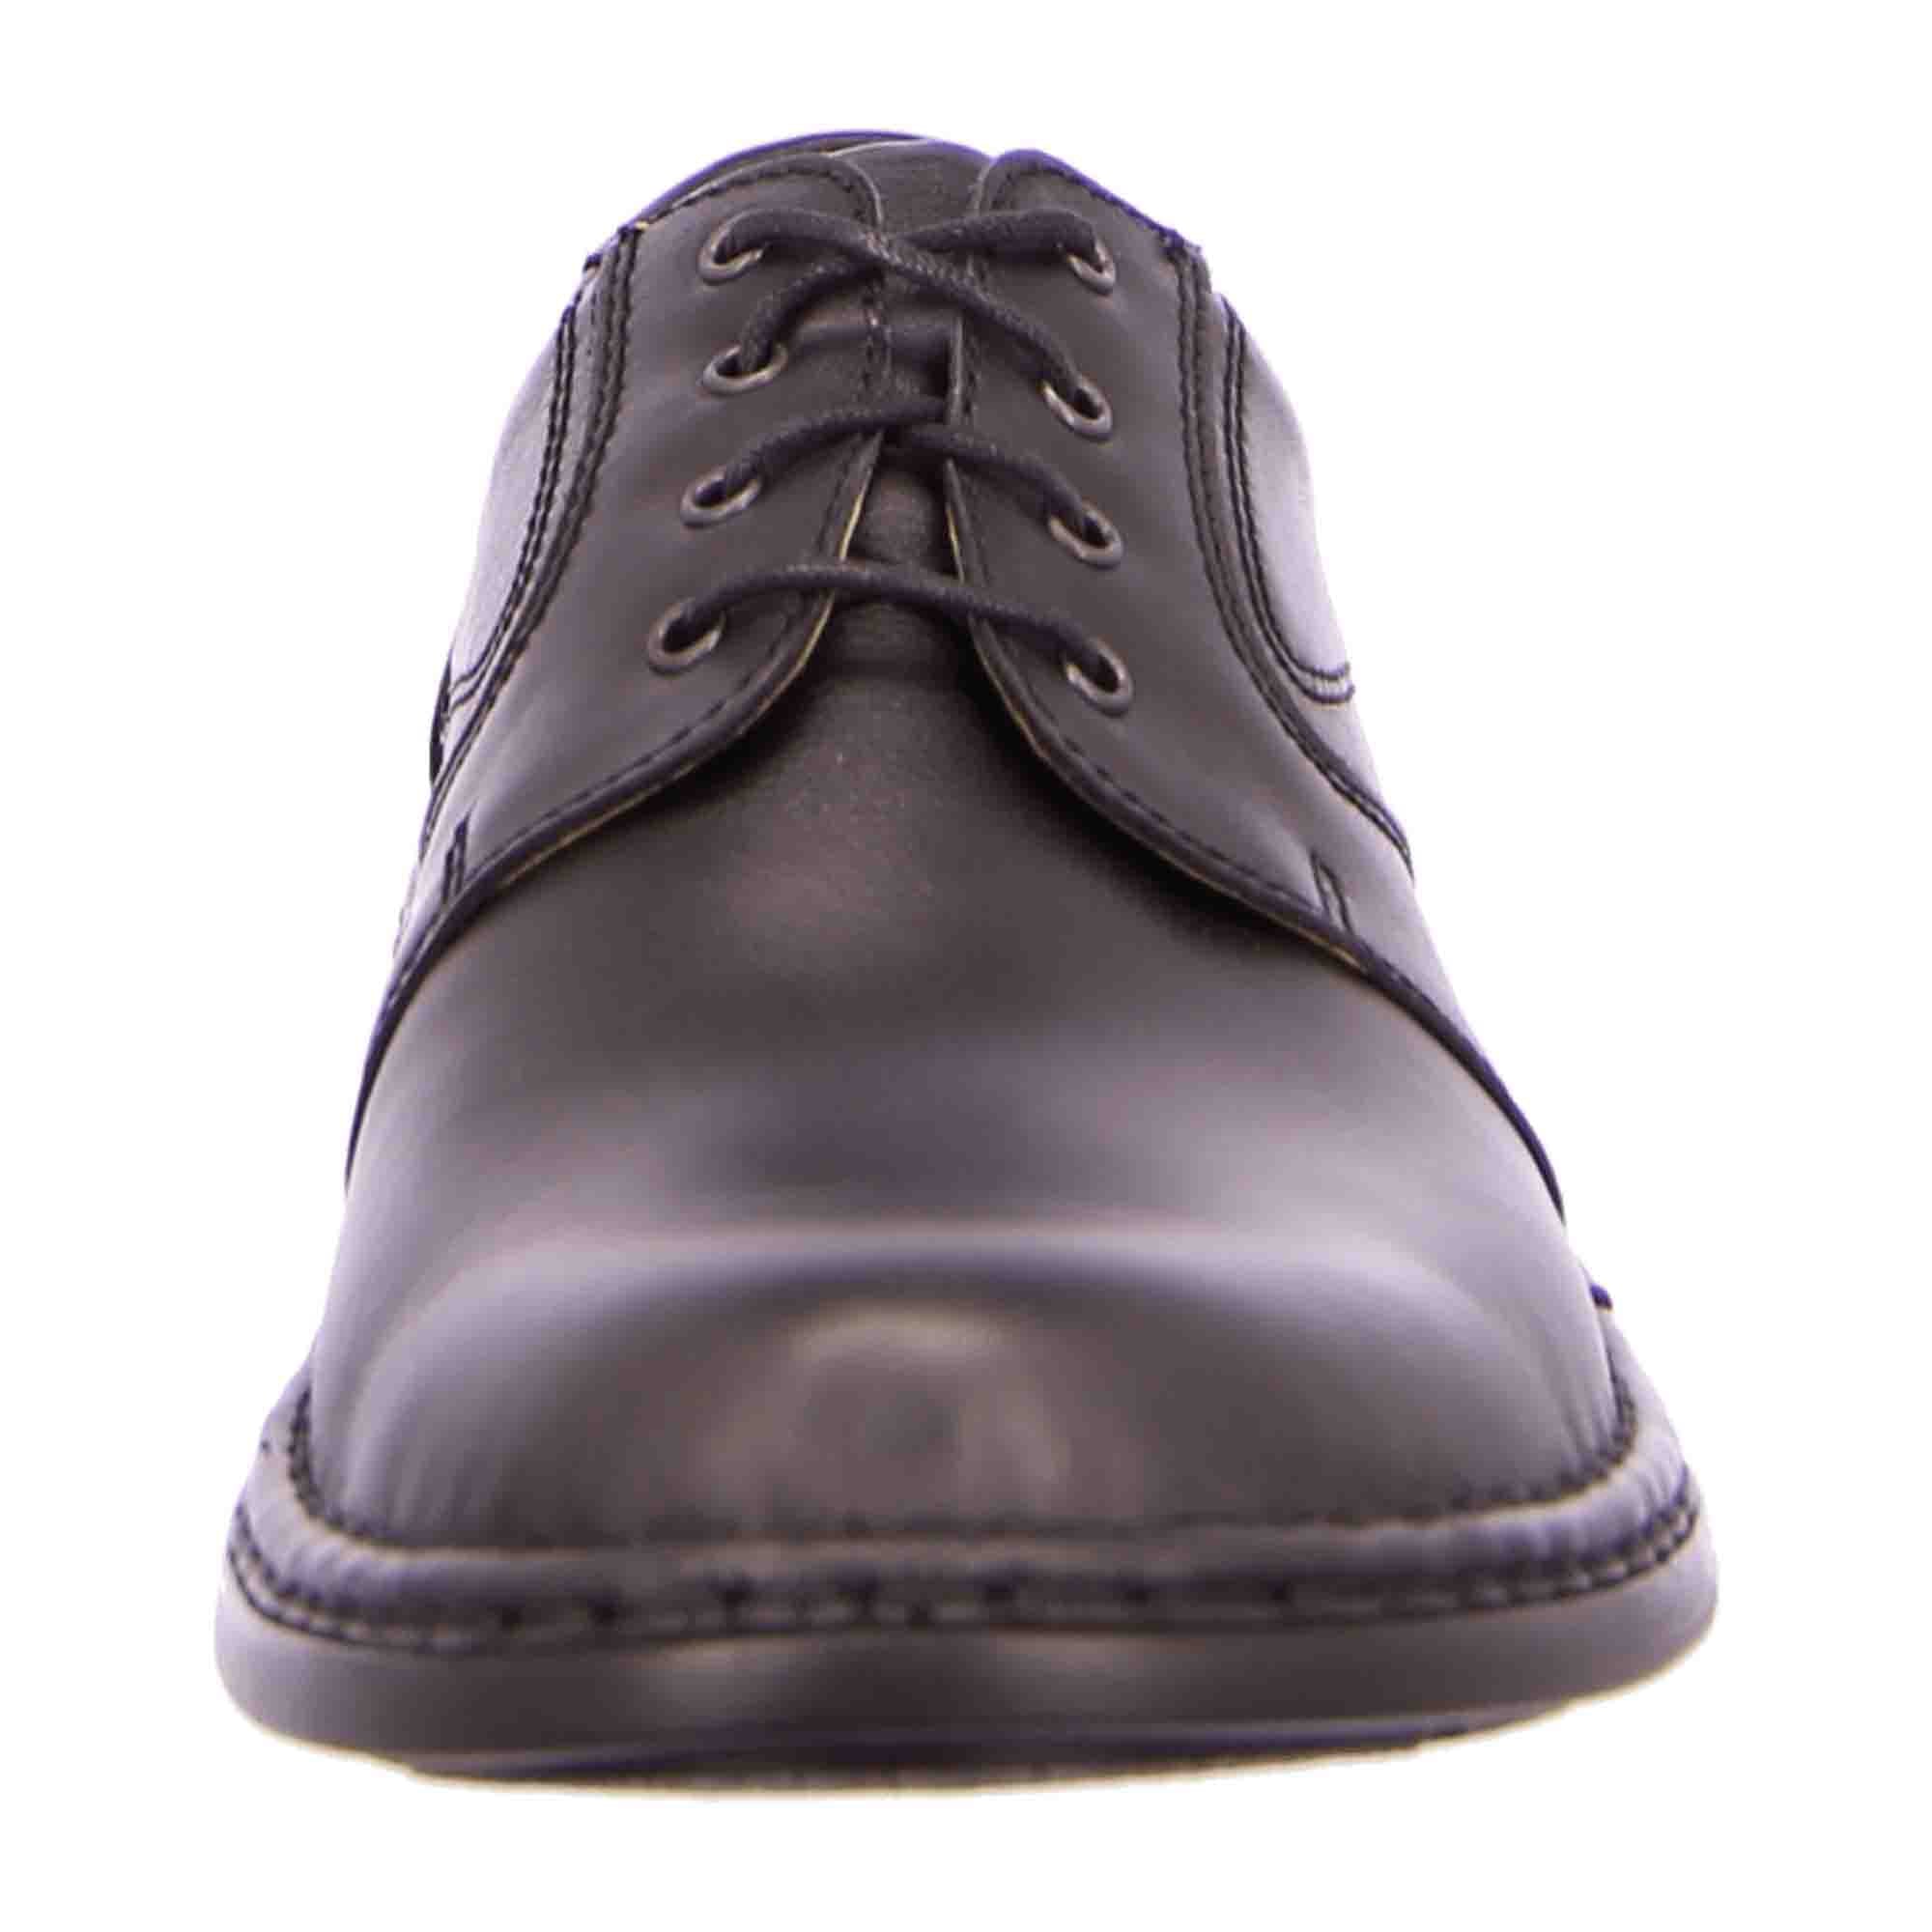 Josef Seibel WALT Lace-up Shoes Elegant for Men in Grey